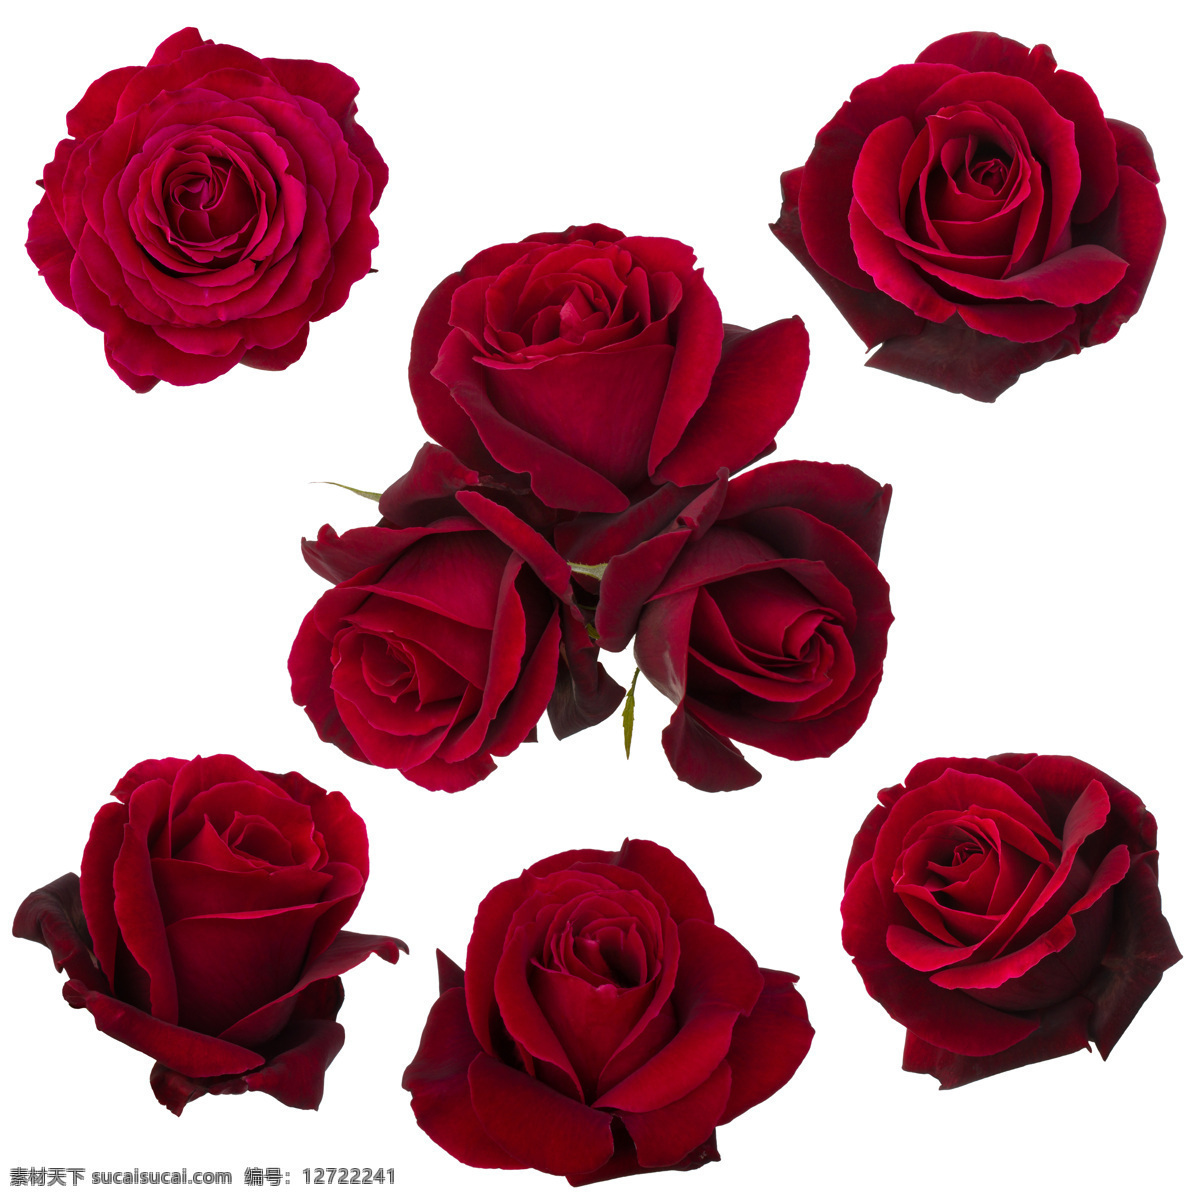 玫瑰花图片 花苞 花蕾 花瓣 红色玫瑰 玫瑰高清图 自然景观